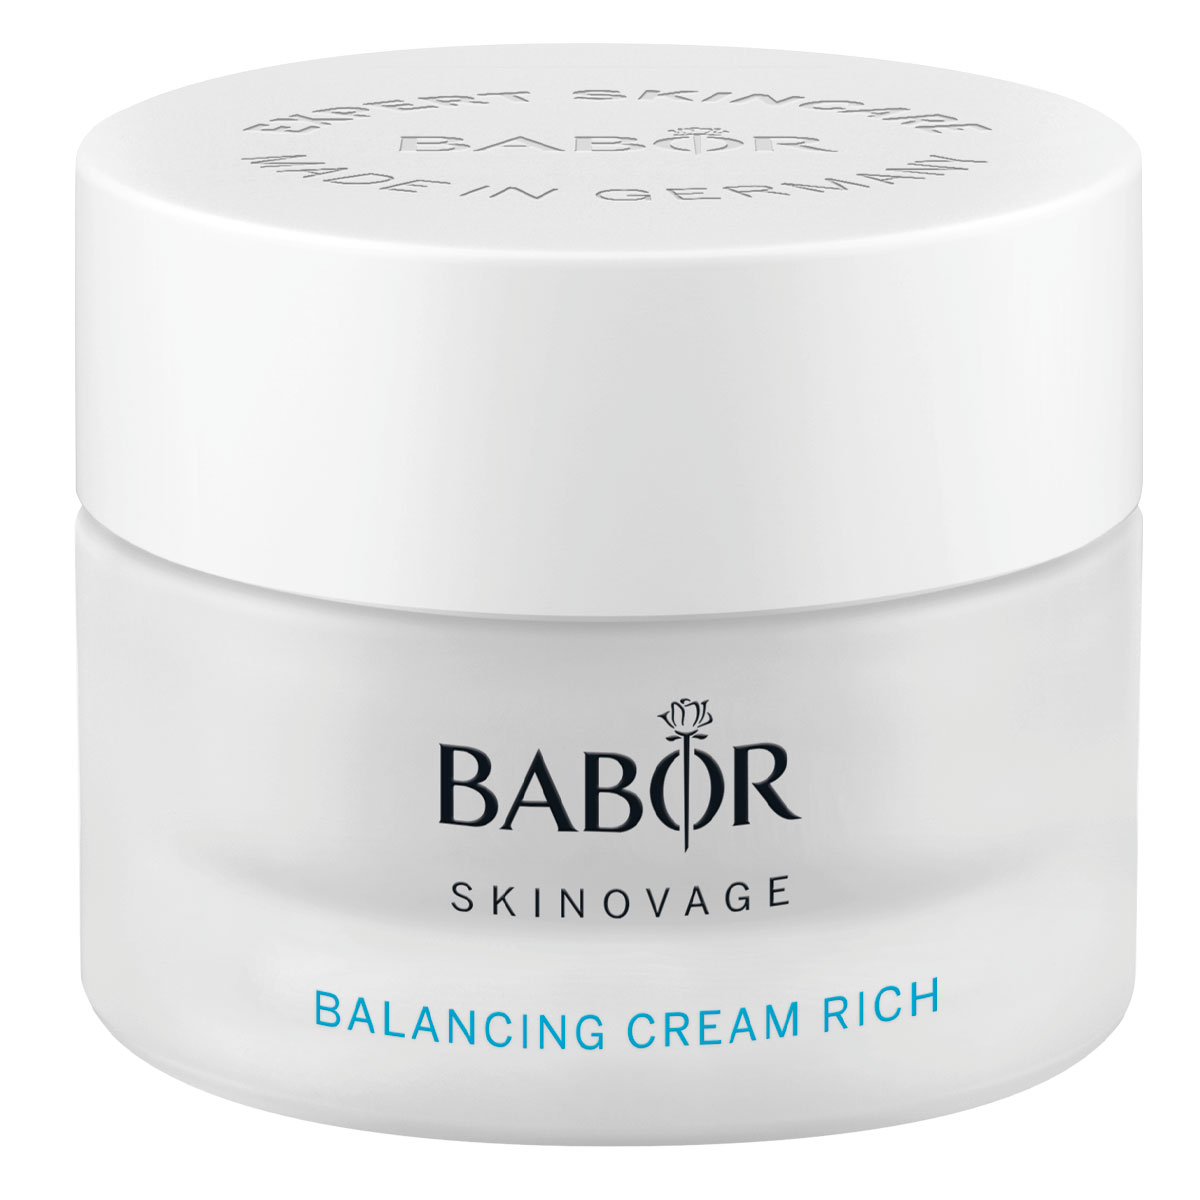 BABOR Skinovage Balancing Cream Rich 50ml - интернет-магазин профессиональной косметики Spadream, изображение 41735